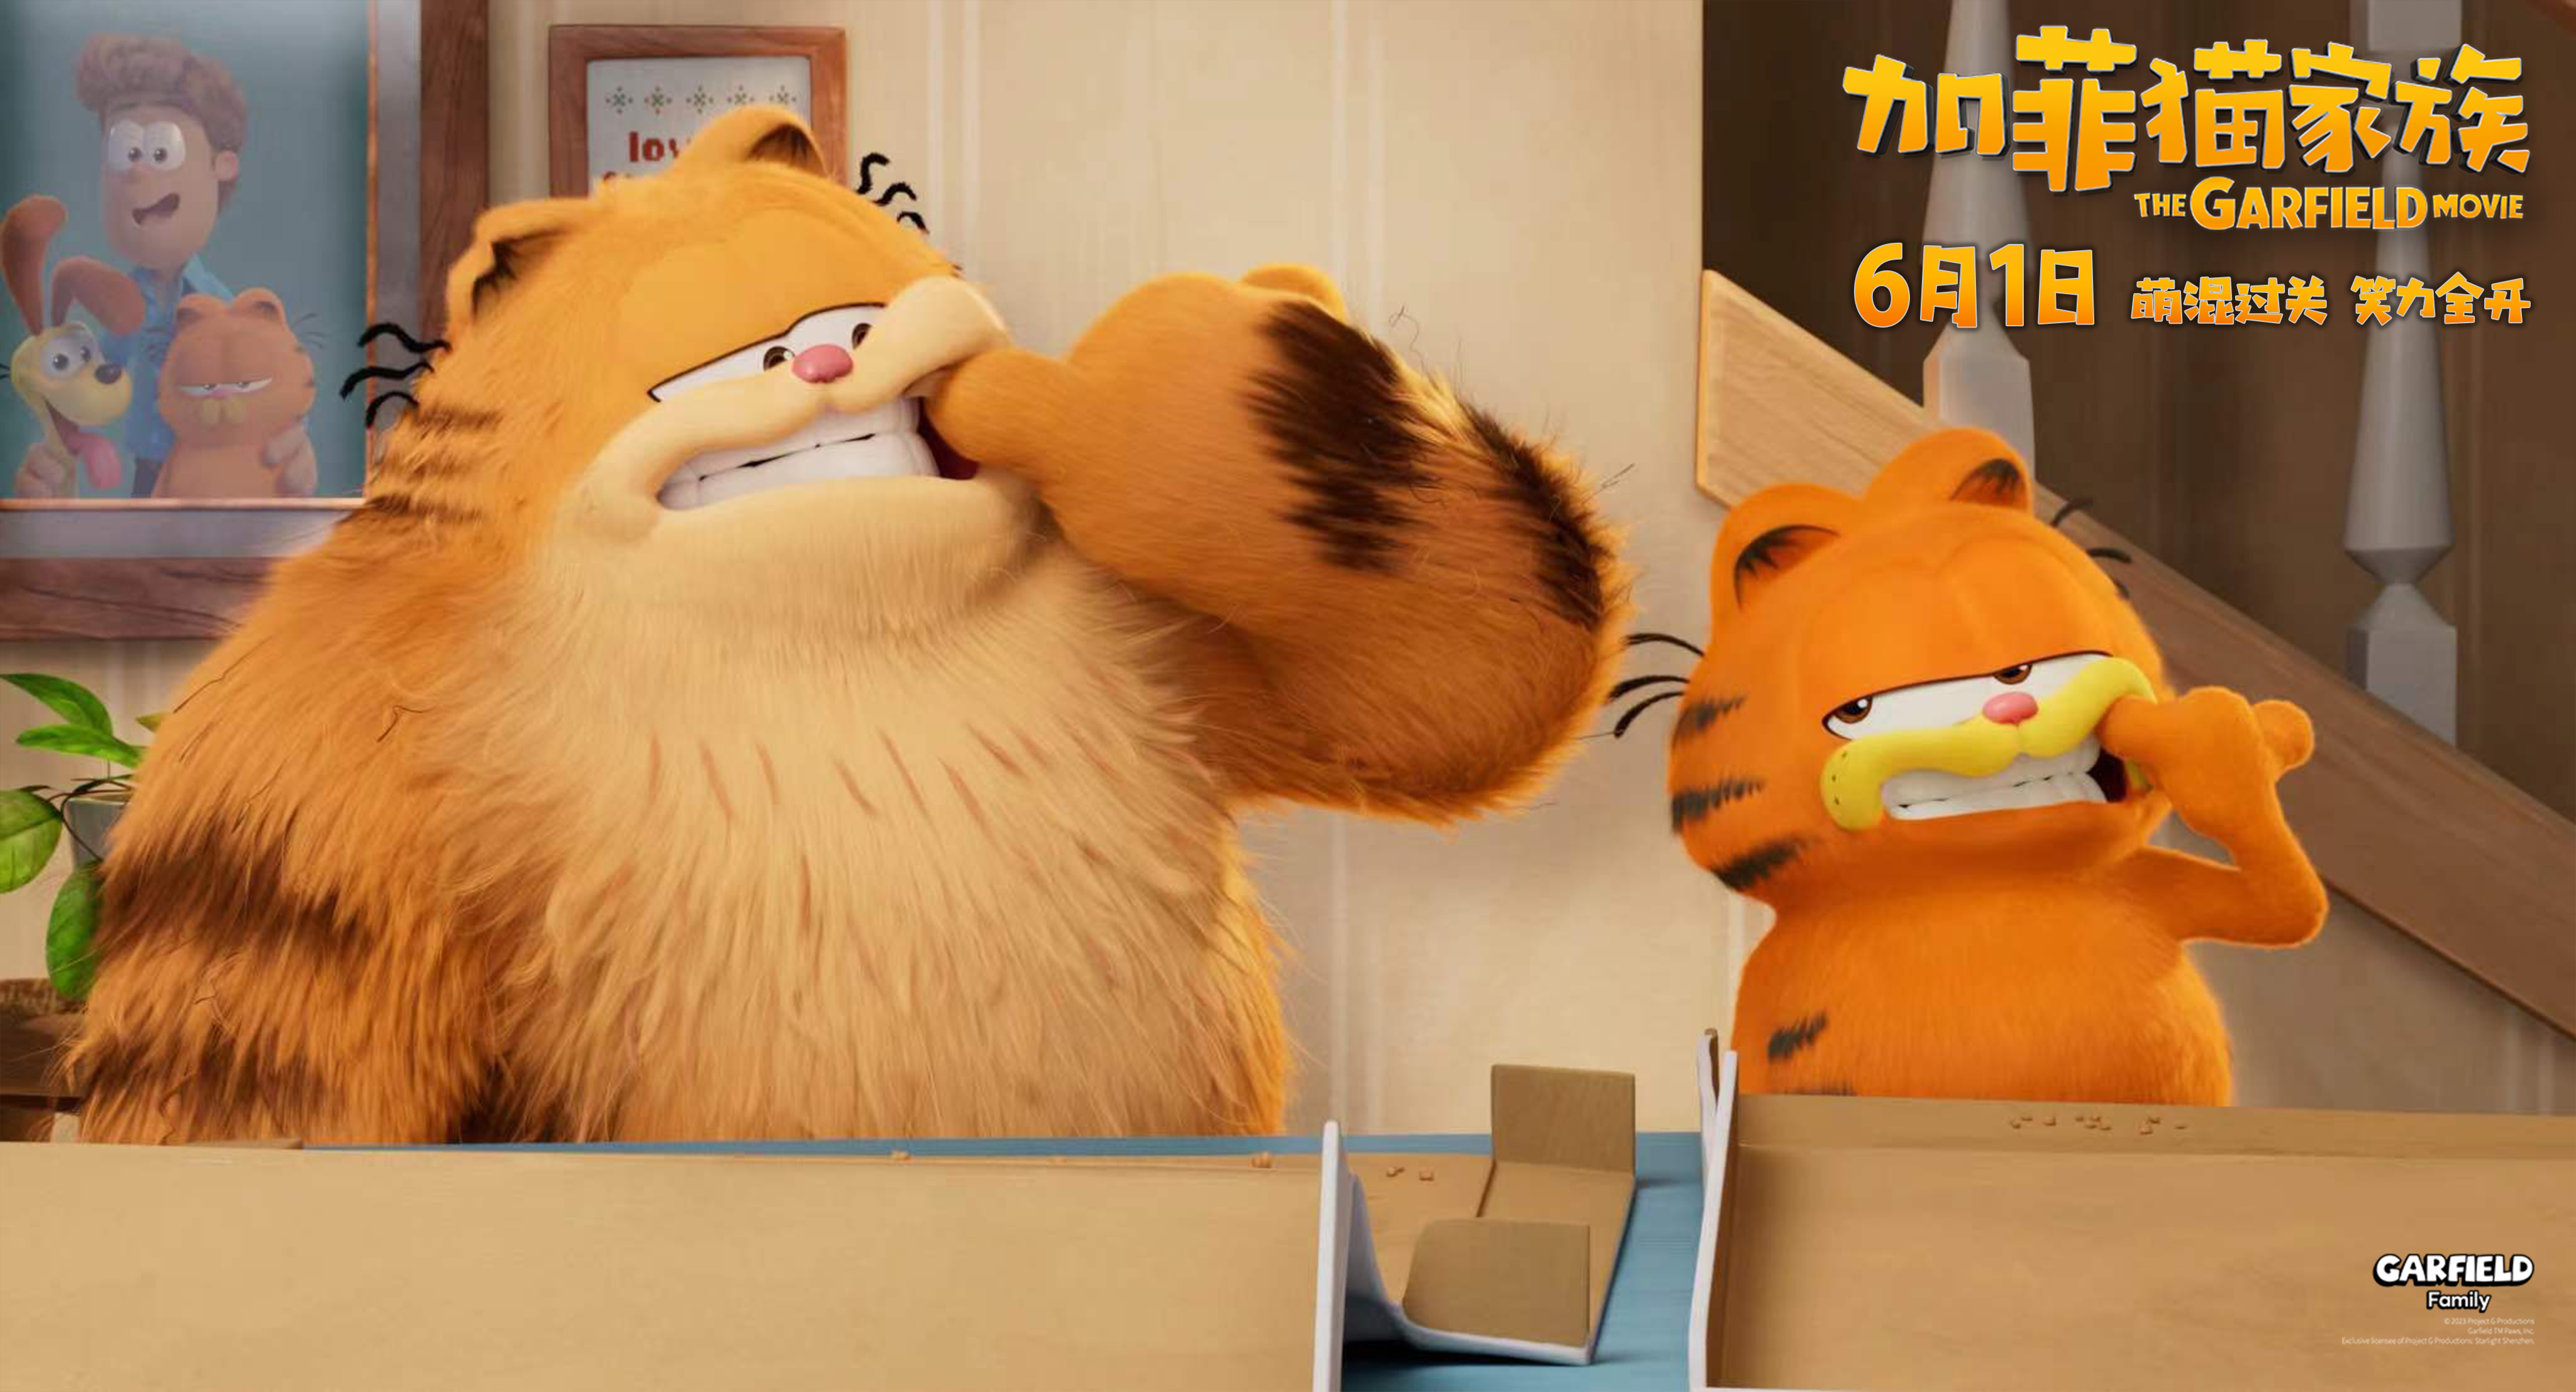 加菲猫家族来了！6月1日国内上映，萌翻天的大小加菲猫三连击